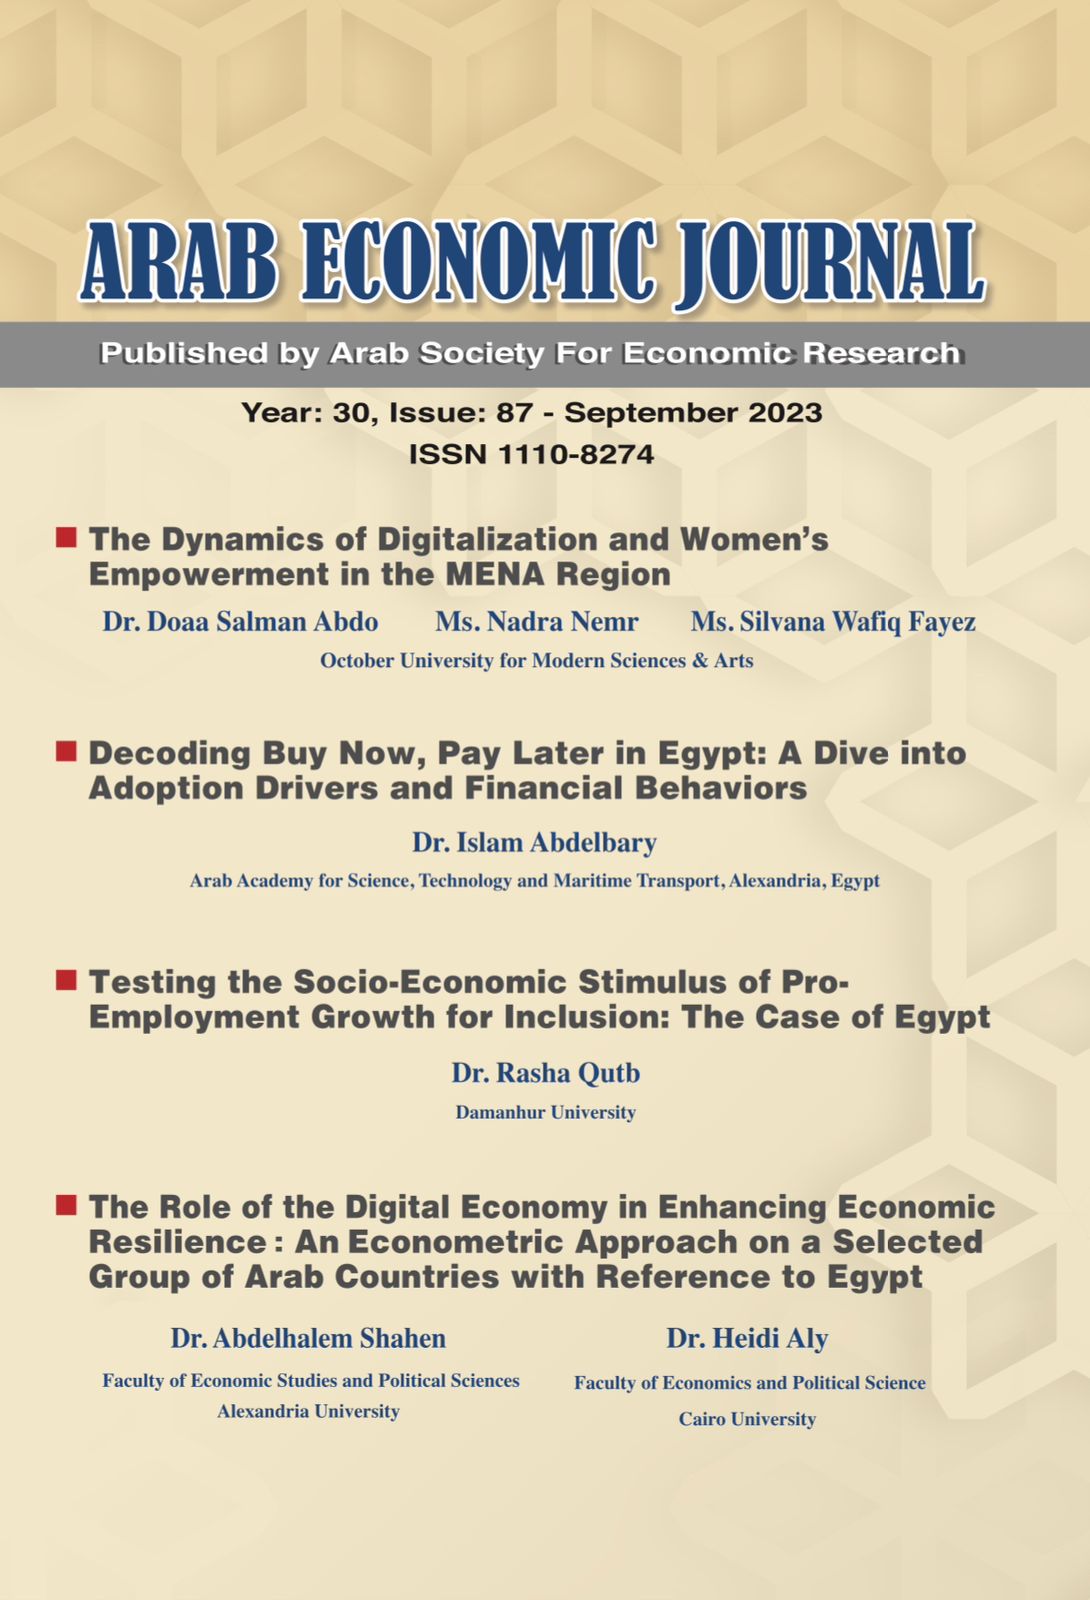 بحوث اقتصادية عربية